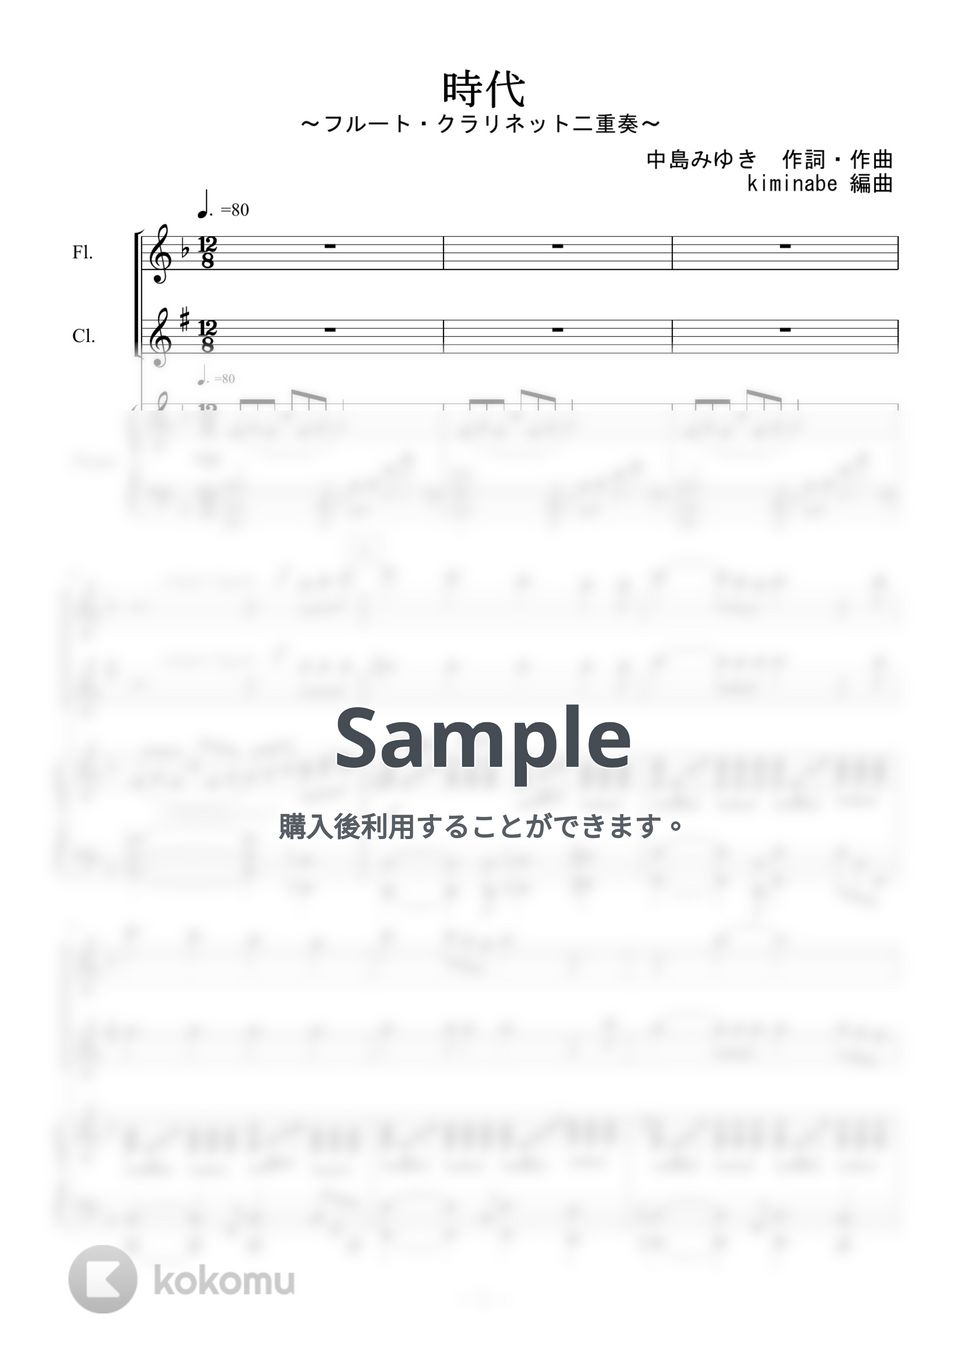 中島みゆき - 時代 (フルート・クラリネット二重奏) by kiminabe